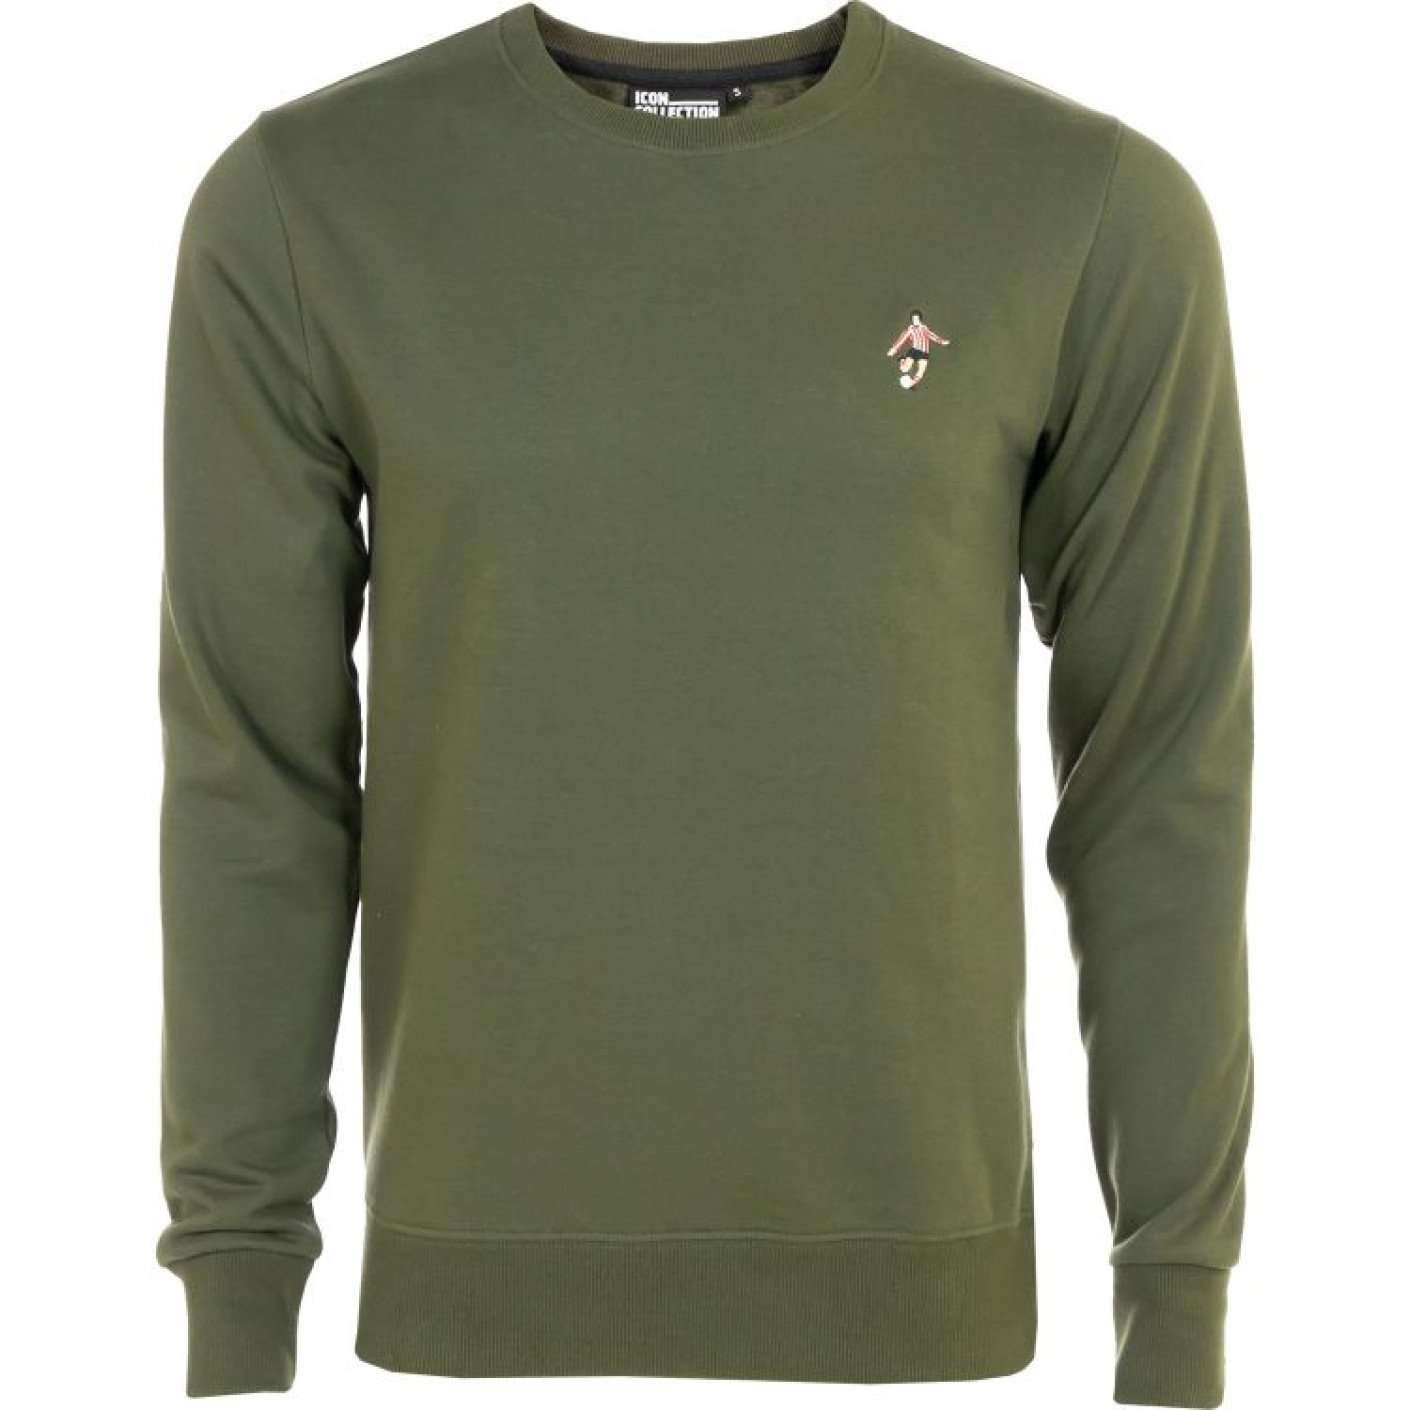 PSV ICON Sweater Khaki